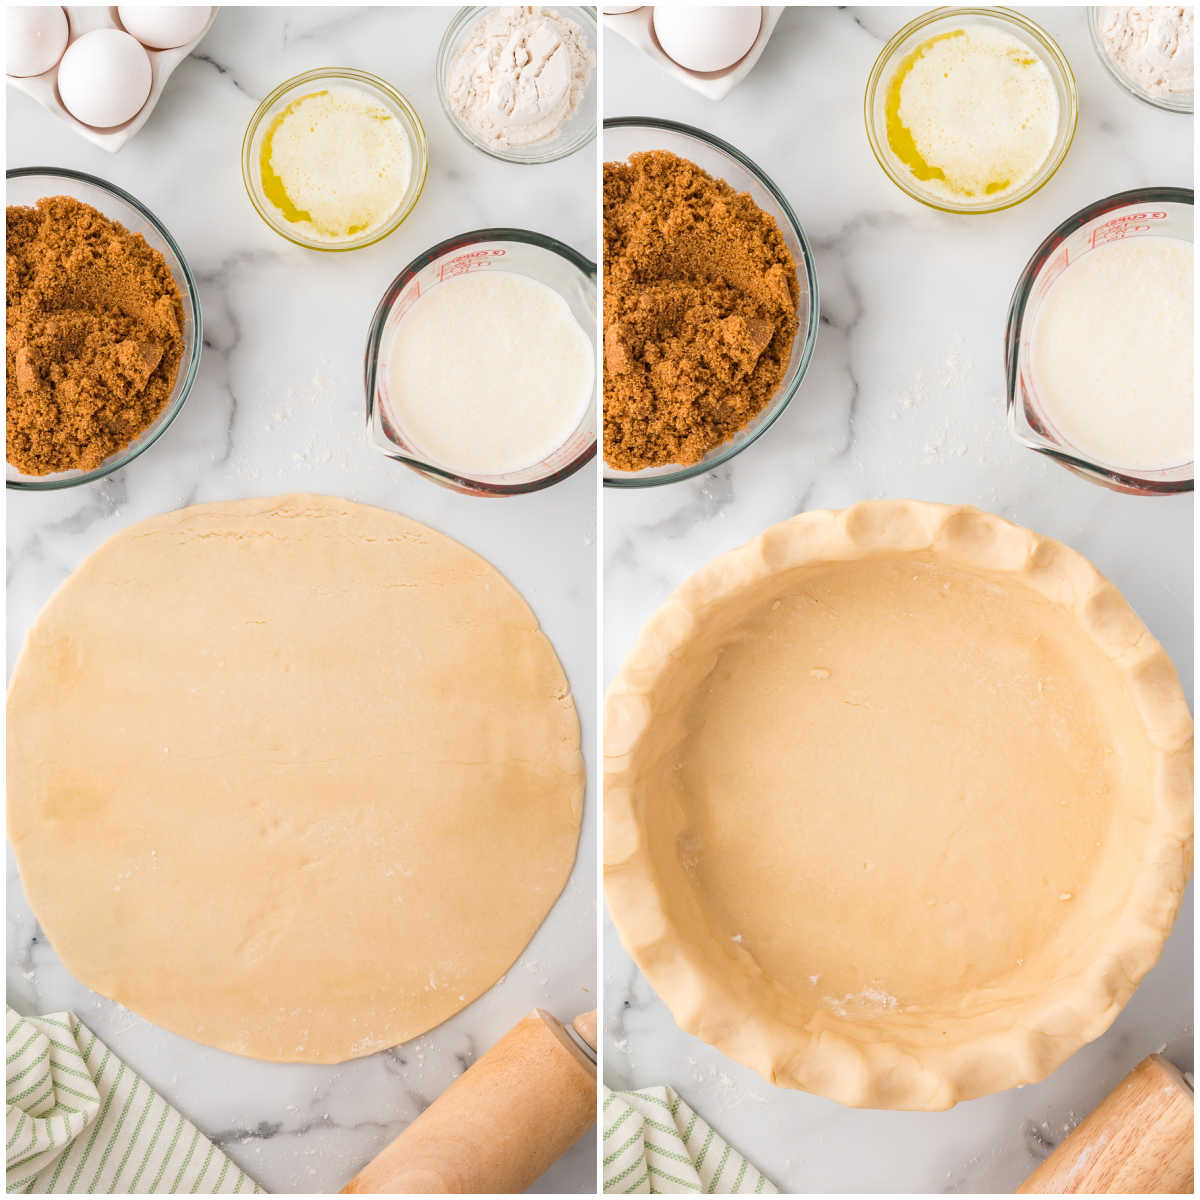 Steps to make sugar pie.